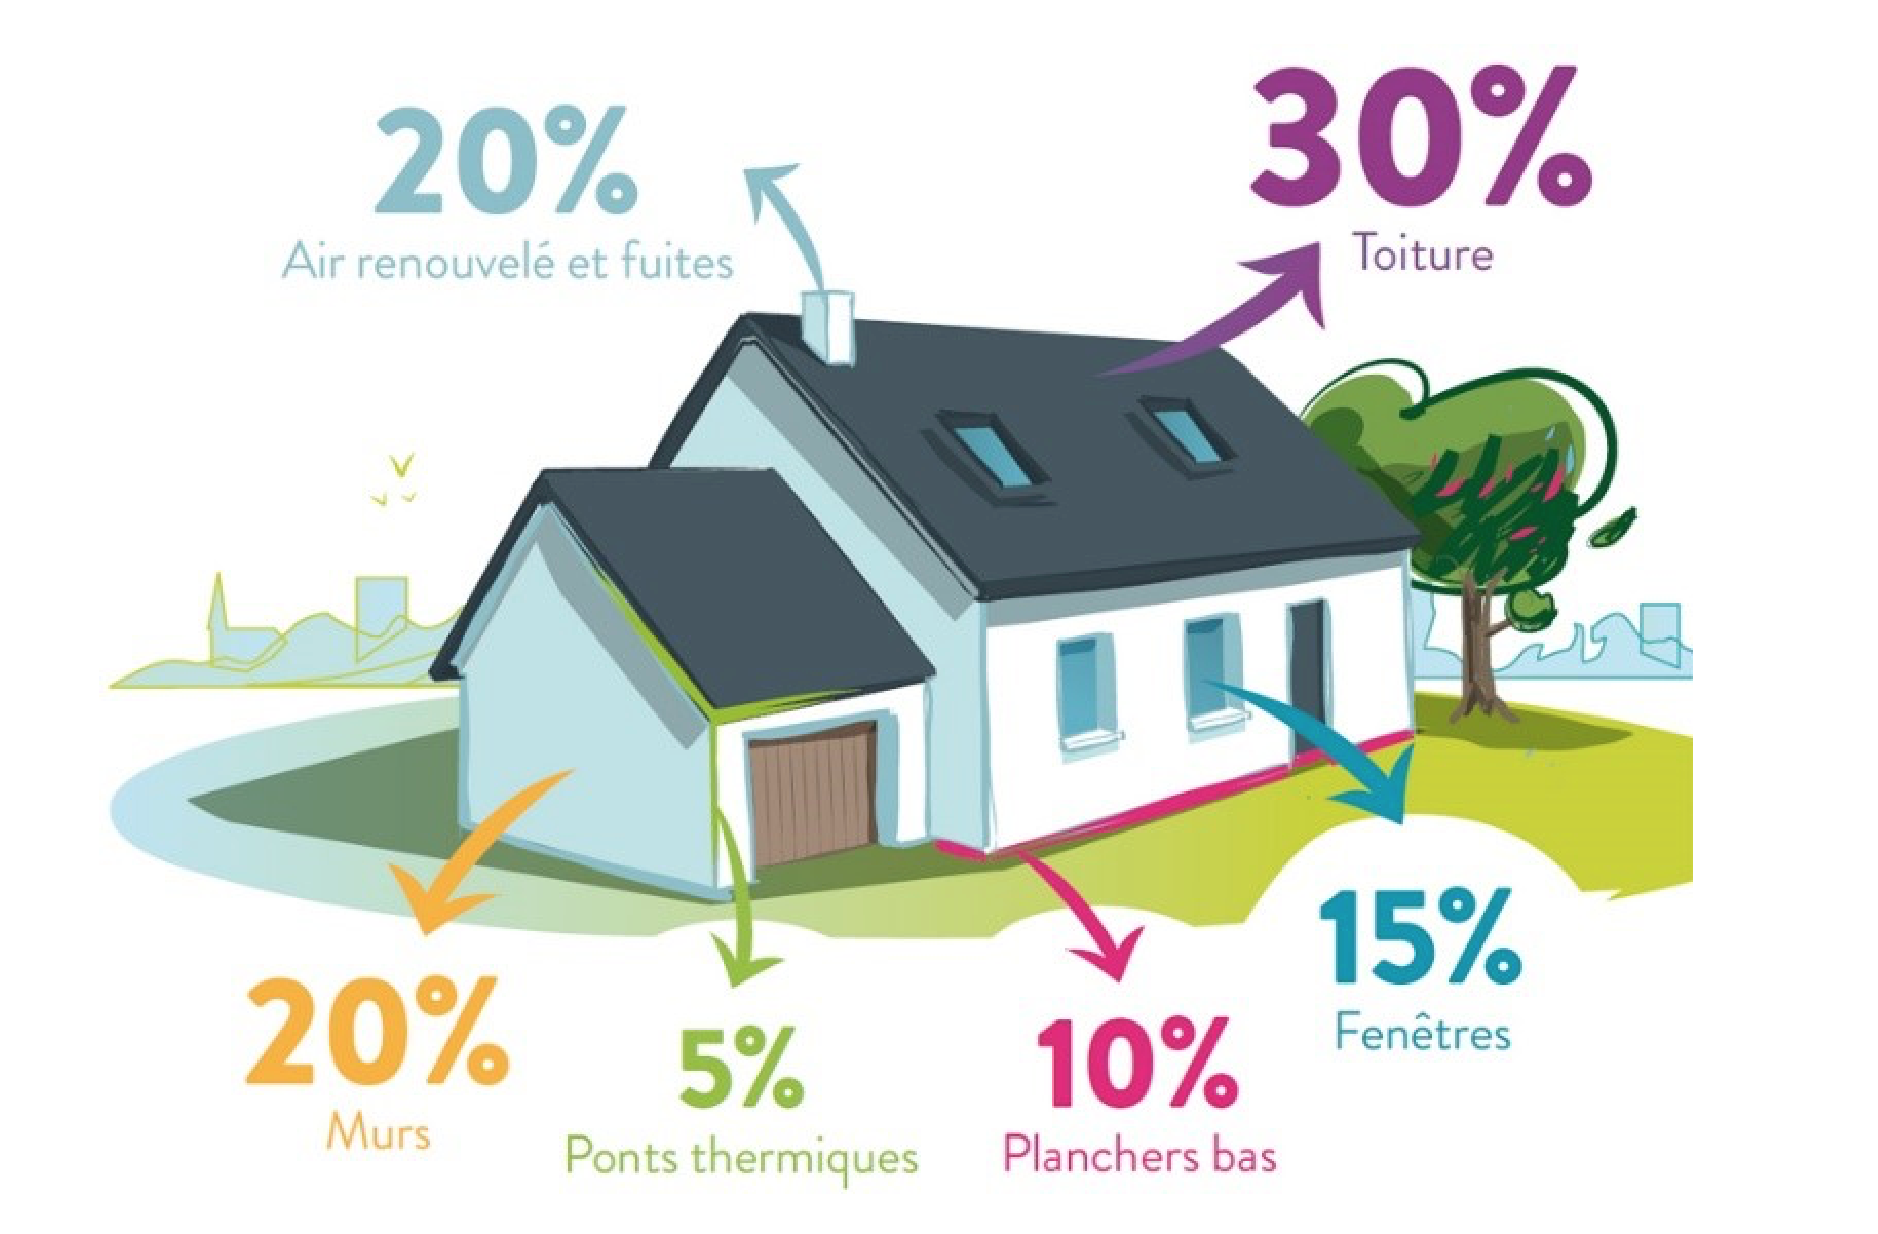 20% air renouvelé et fuite, 30% toiture, 20% murs, 5% ponts thermiques, 10% planchers bas, 15% fenêtres